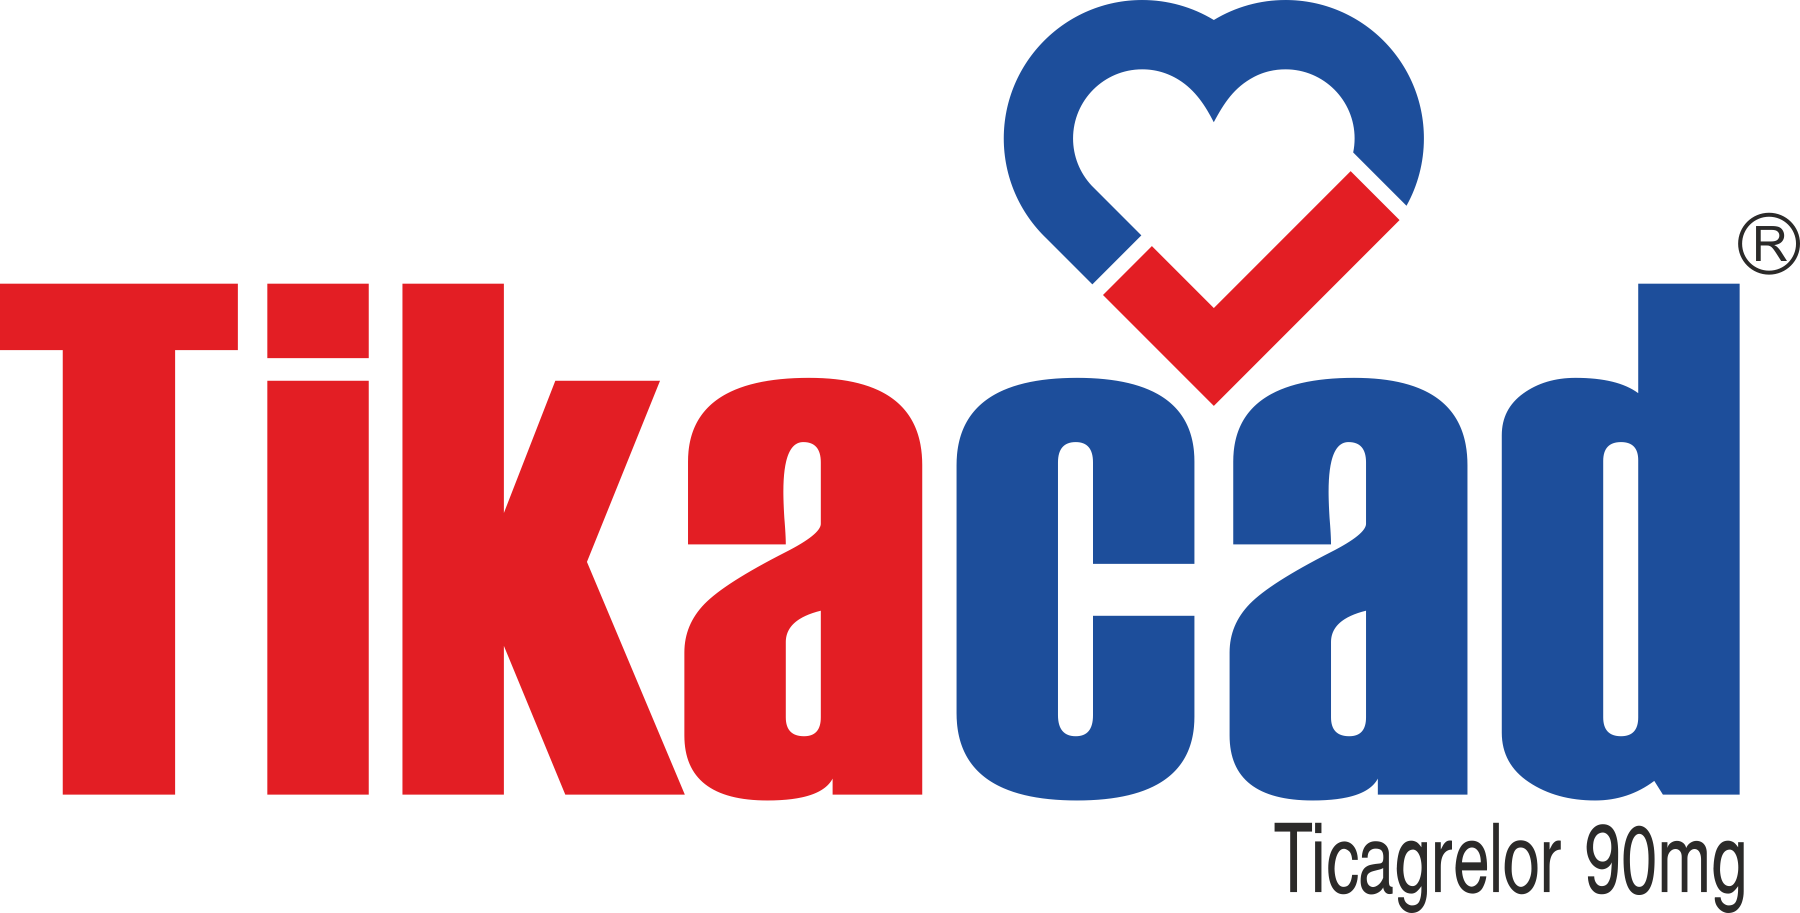 Cadila pharmaceuticals launches Tikacad